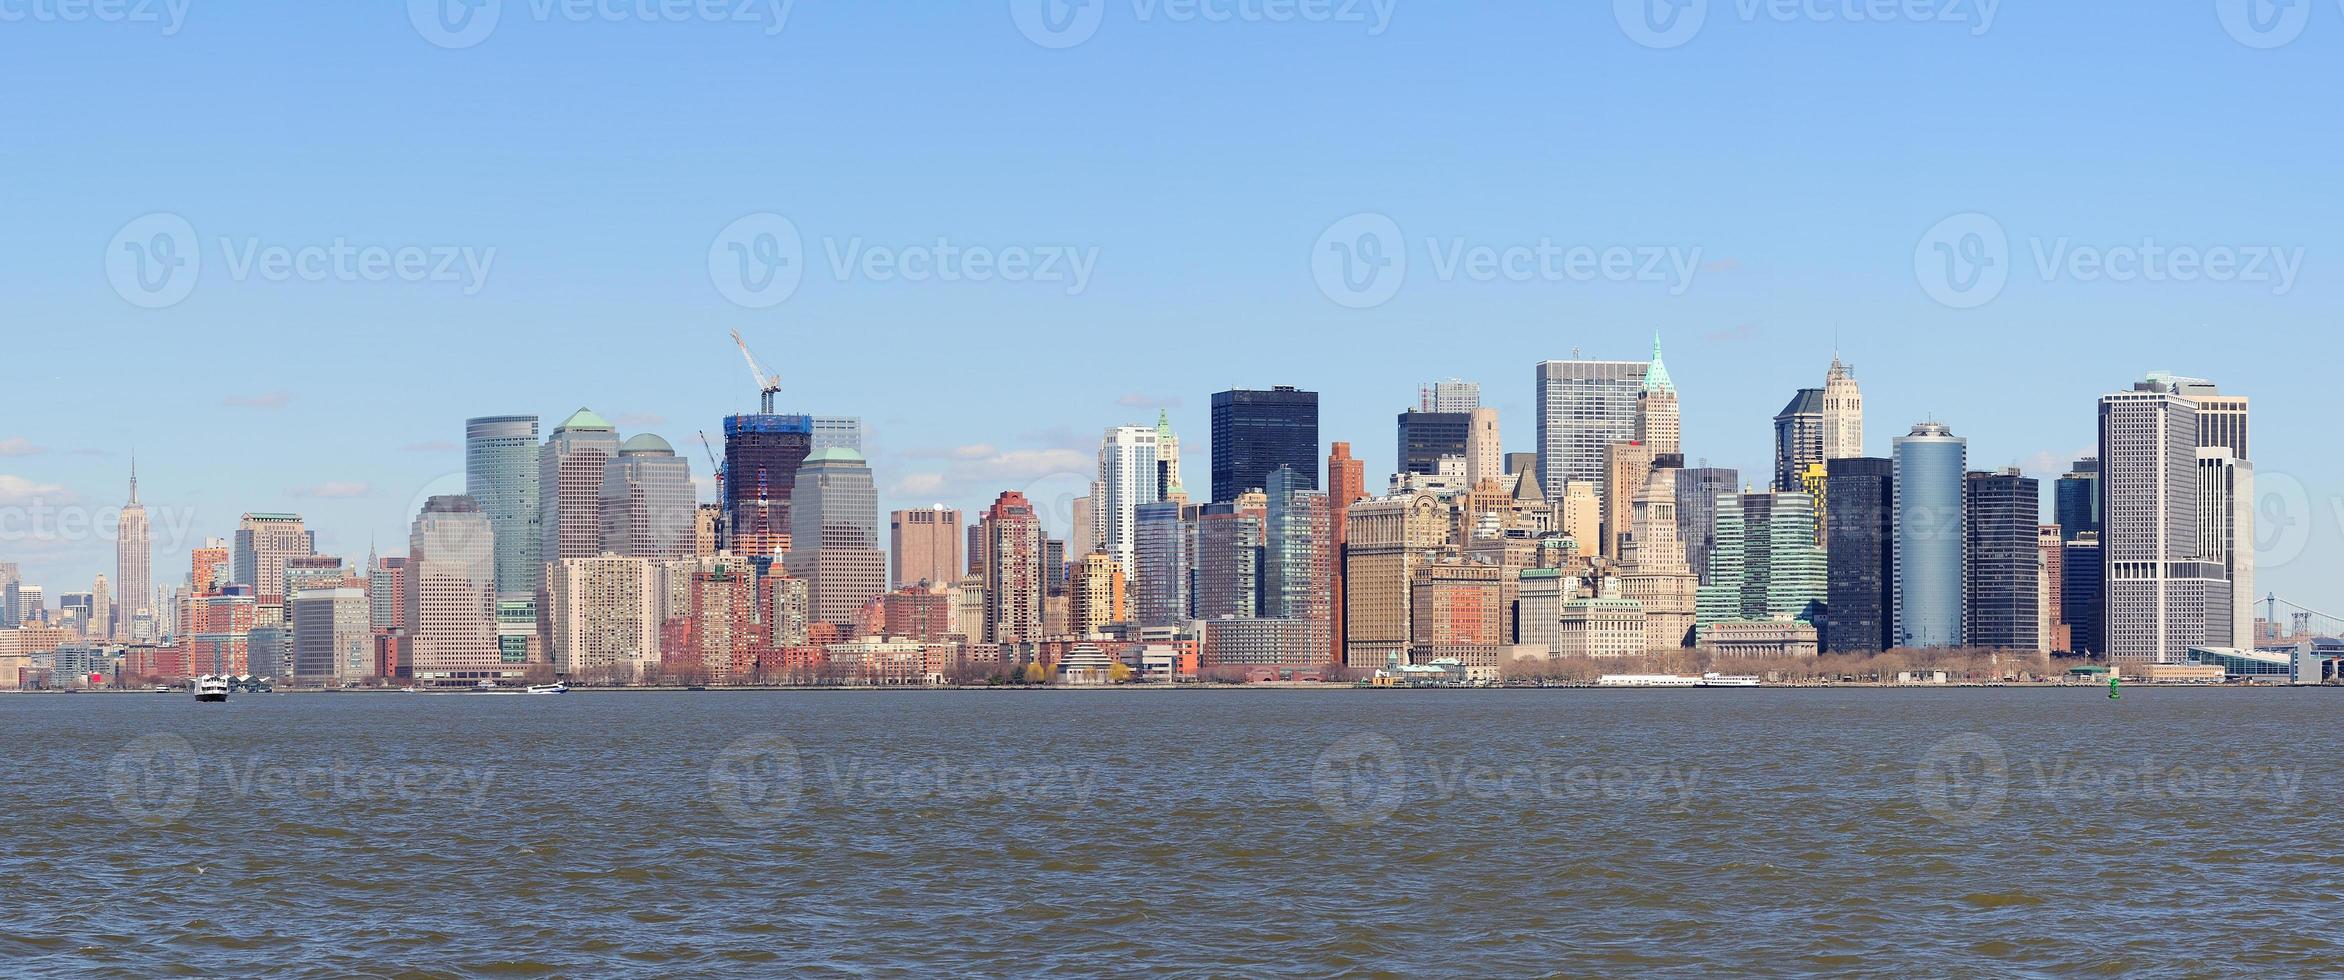 Skyline-Panorama von New York City Manhattan foto